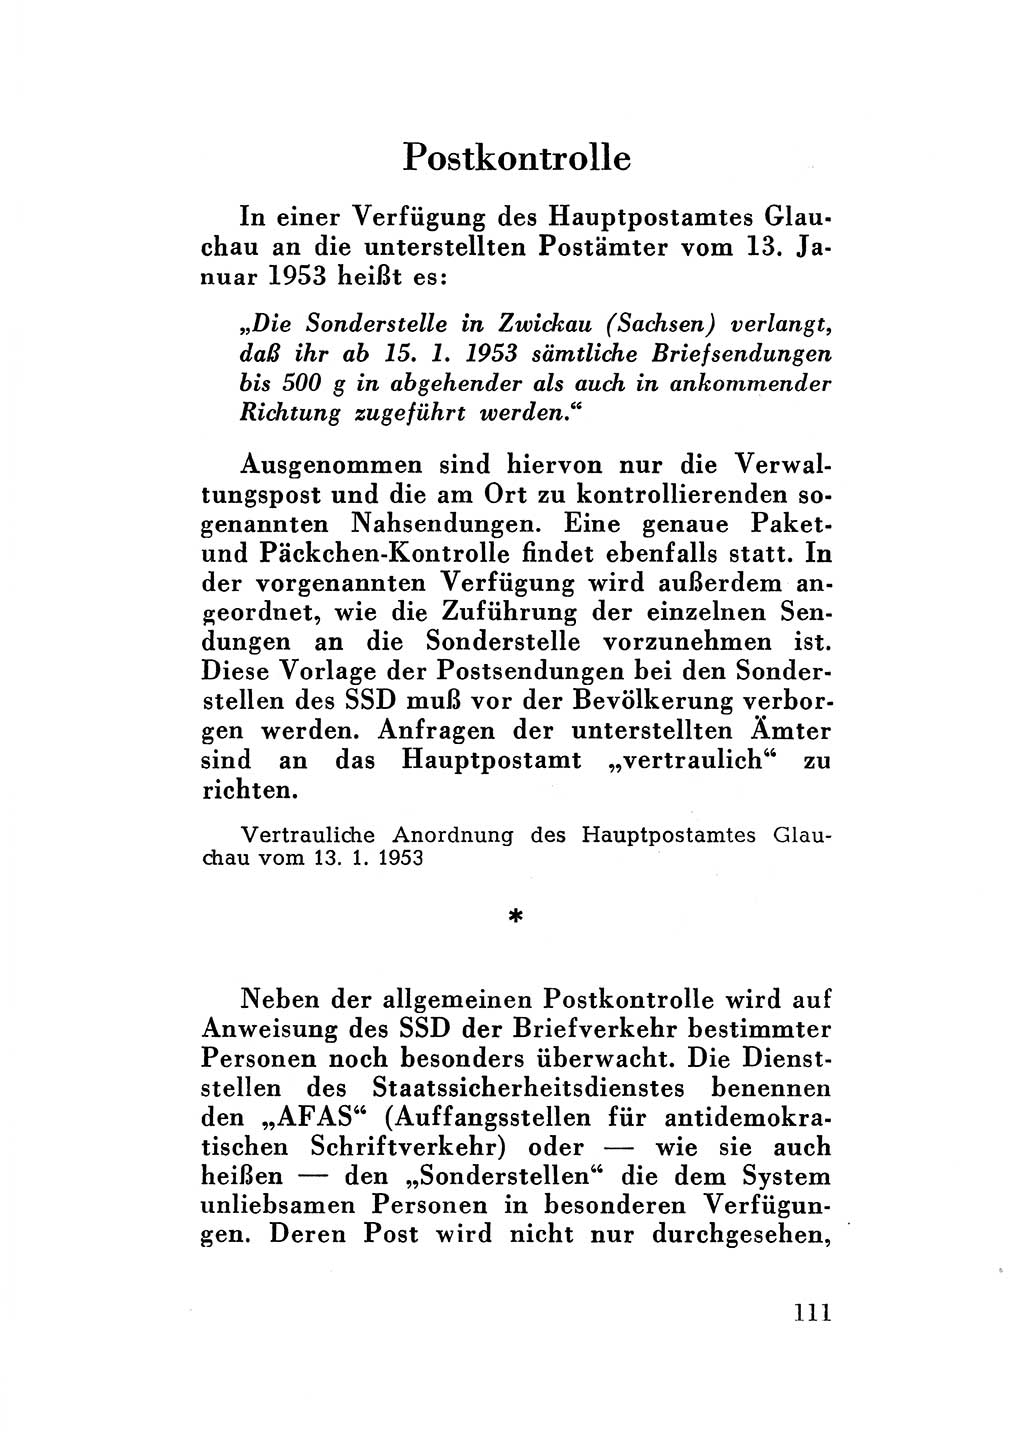 Katalog des Unrechts, Untersuchungsausschuß Freiheitlicher Juristen (UfJ) [Bundesrepublik Deutschland (BRD)] 1956, Seite 111 (Kat. UnR. UfJ BRD 1956, S. 111)